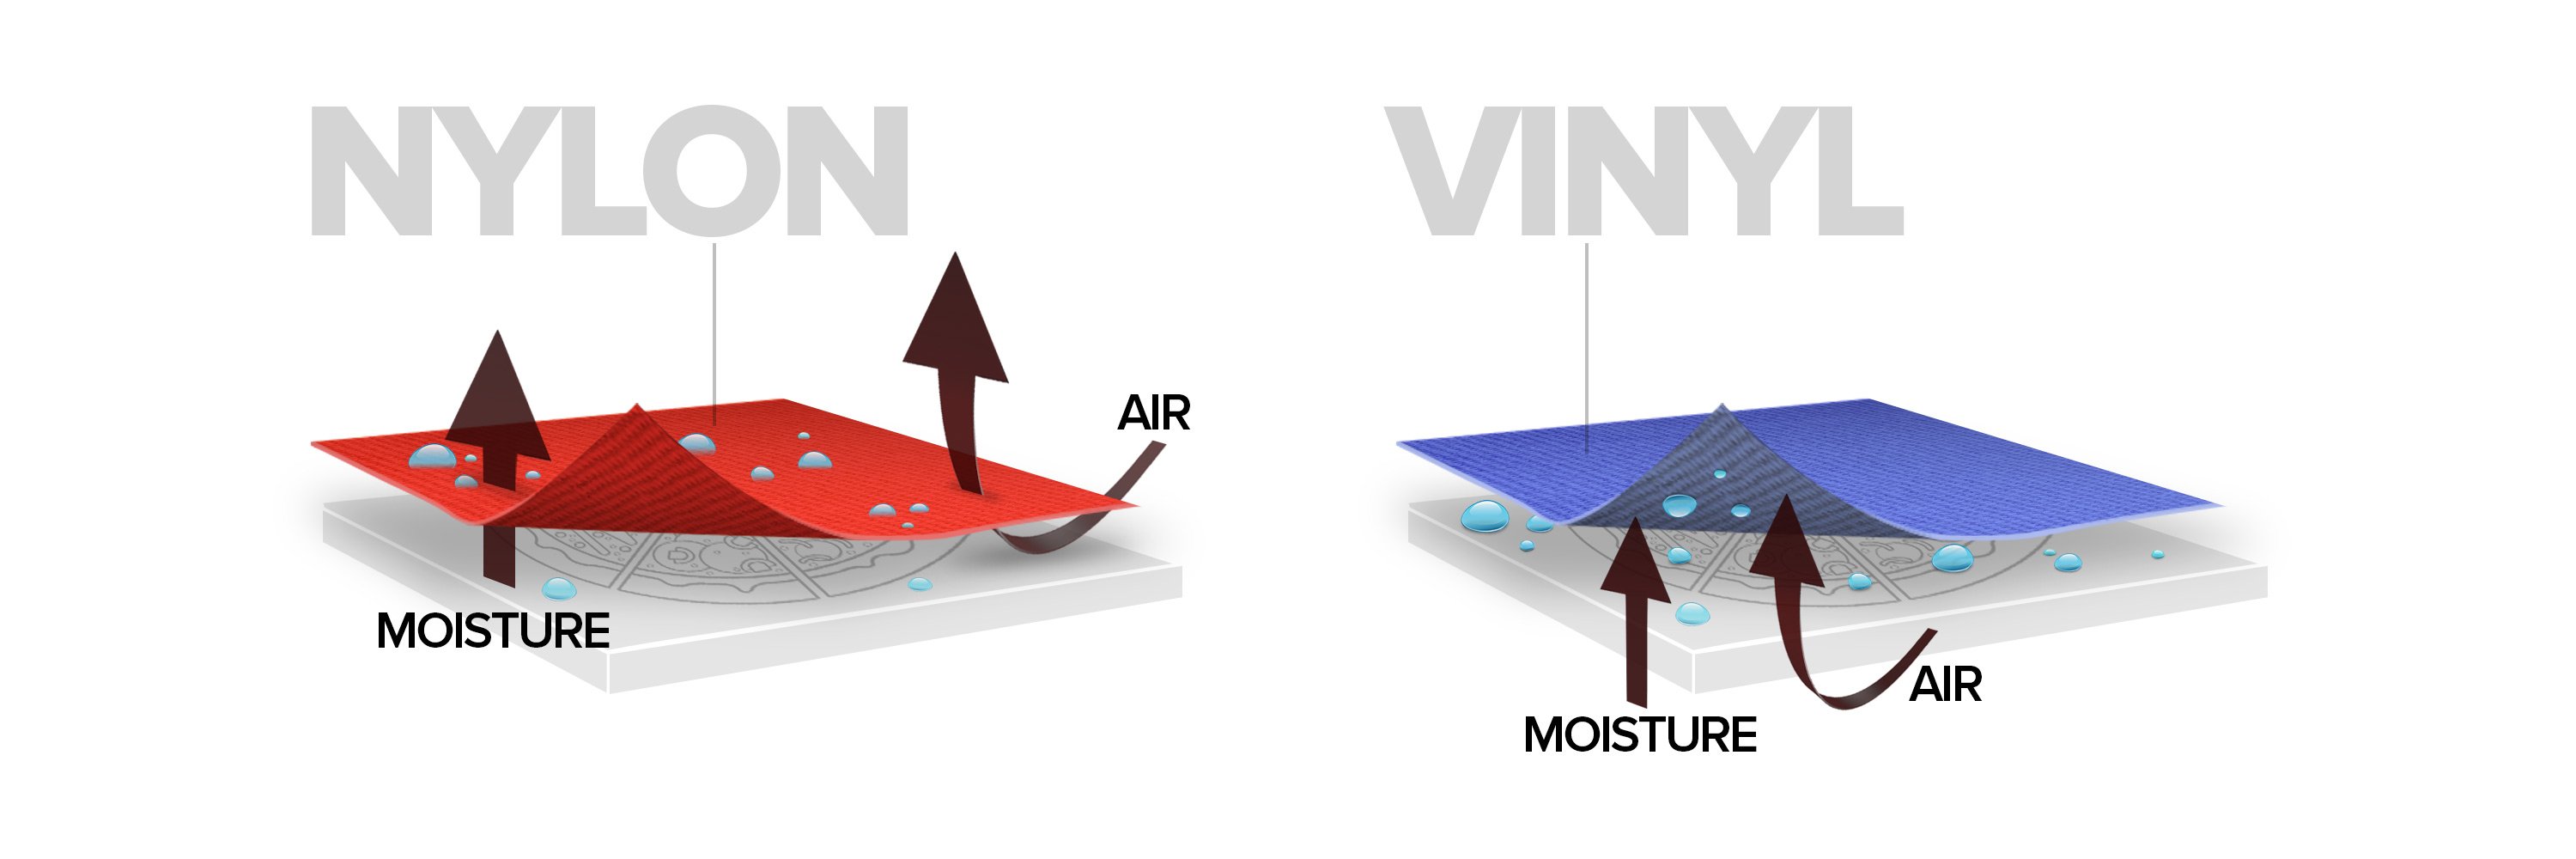 Nylon vs vinyl material diagram